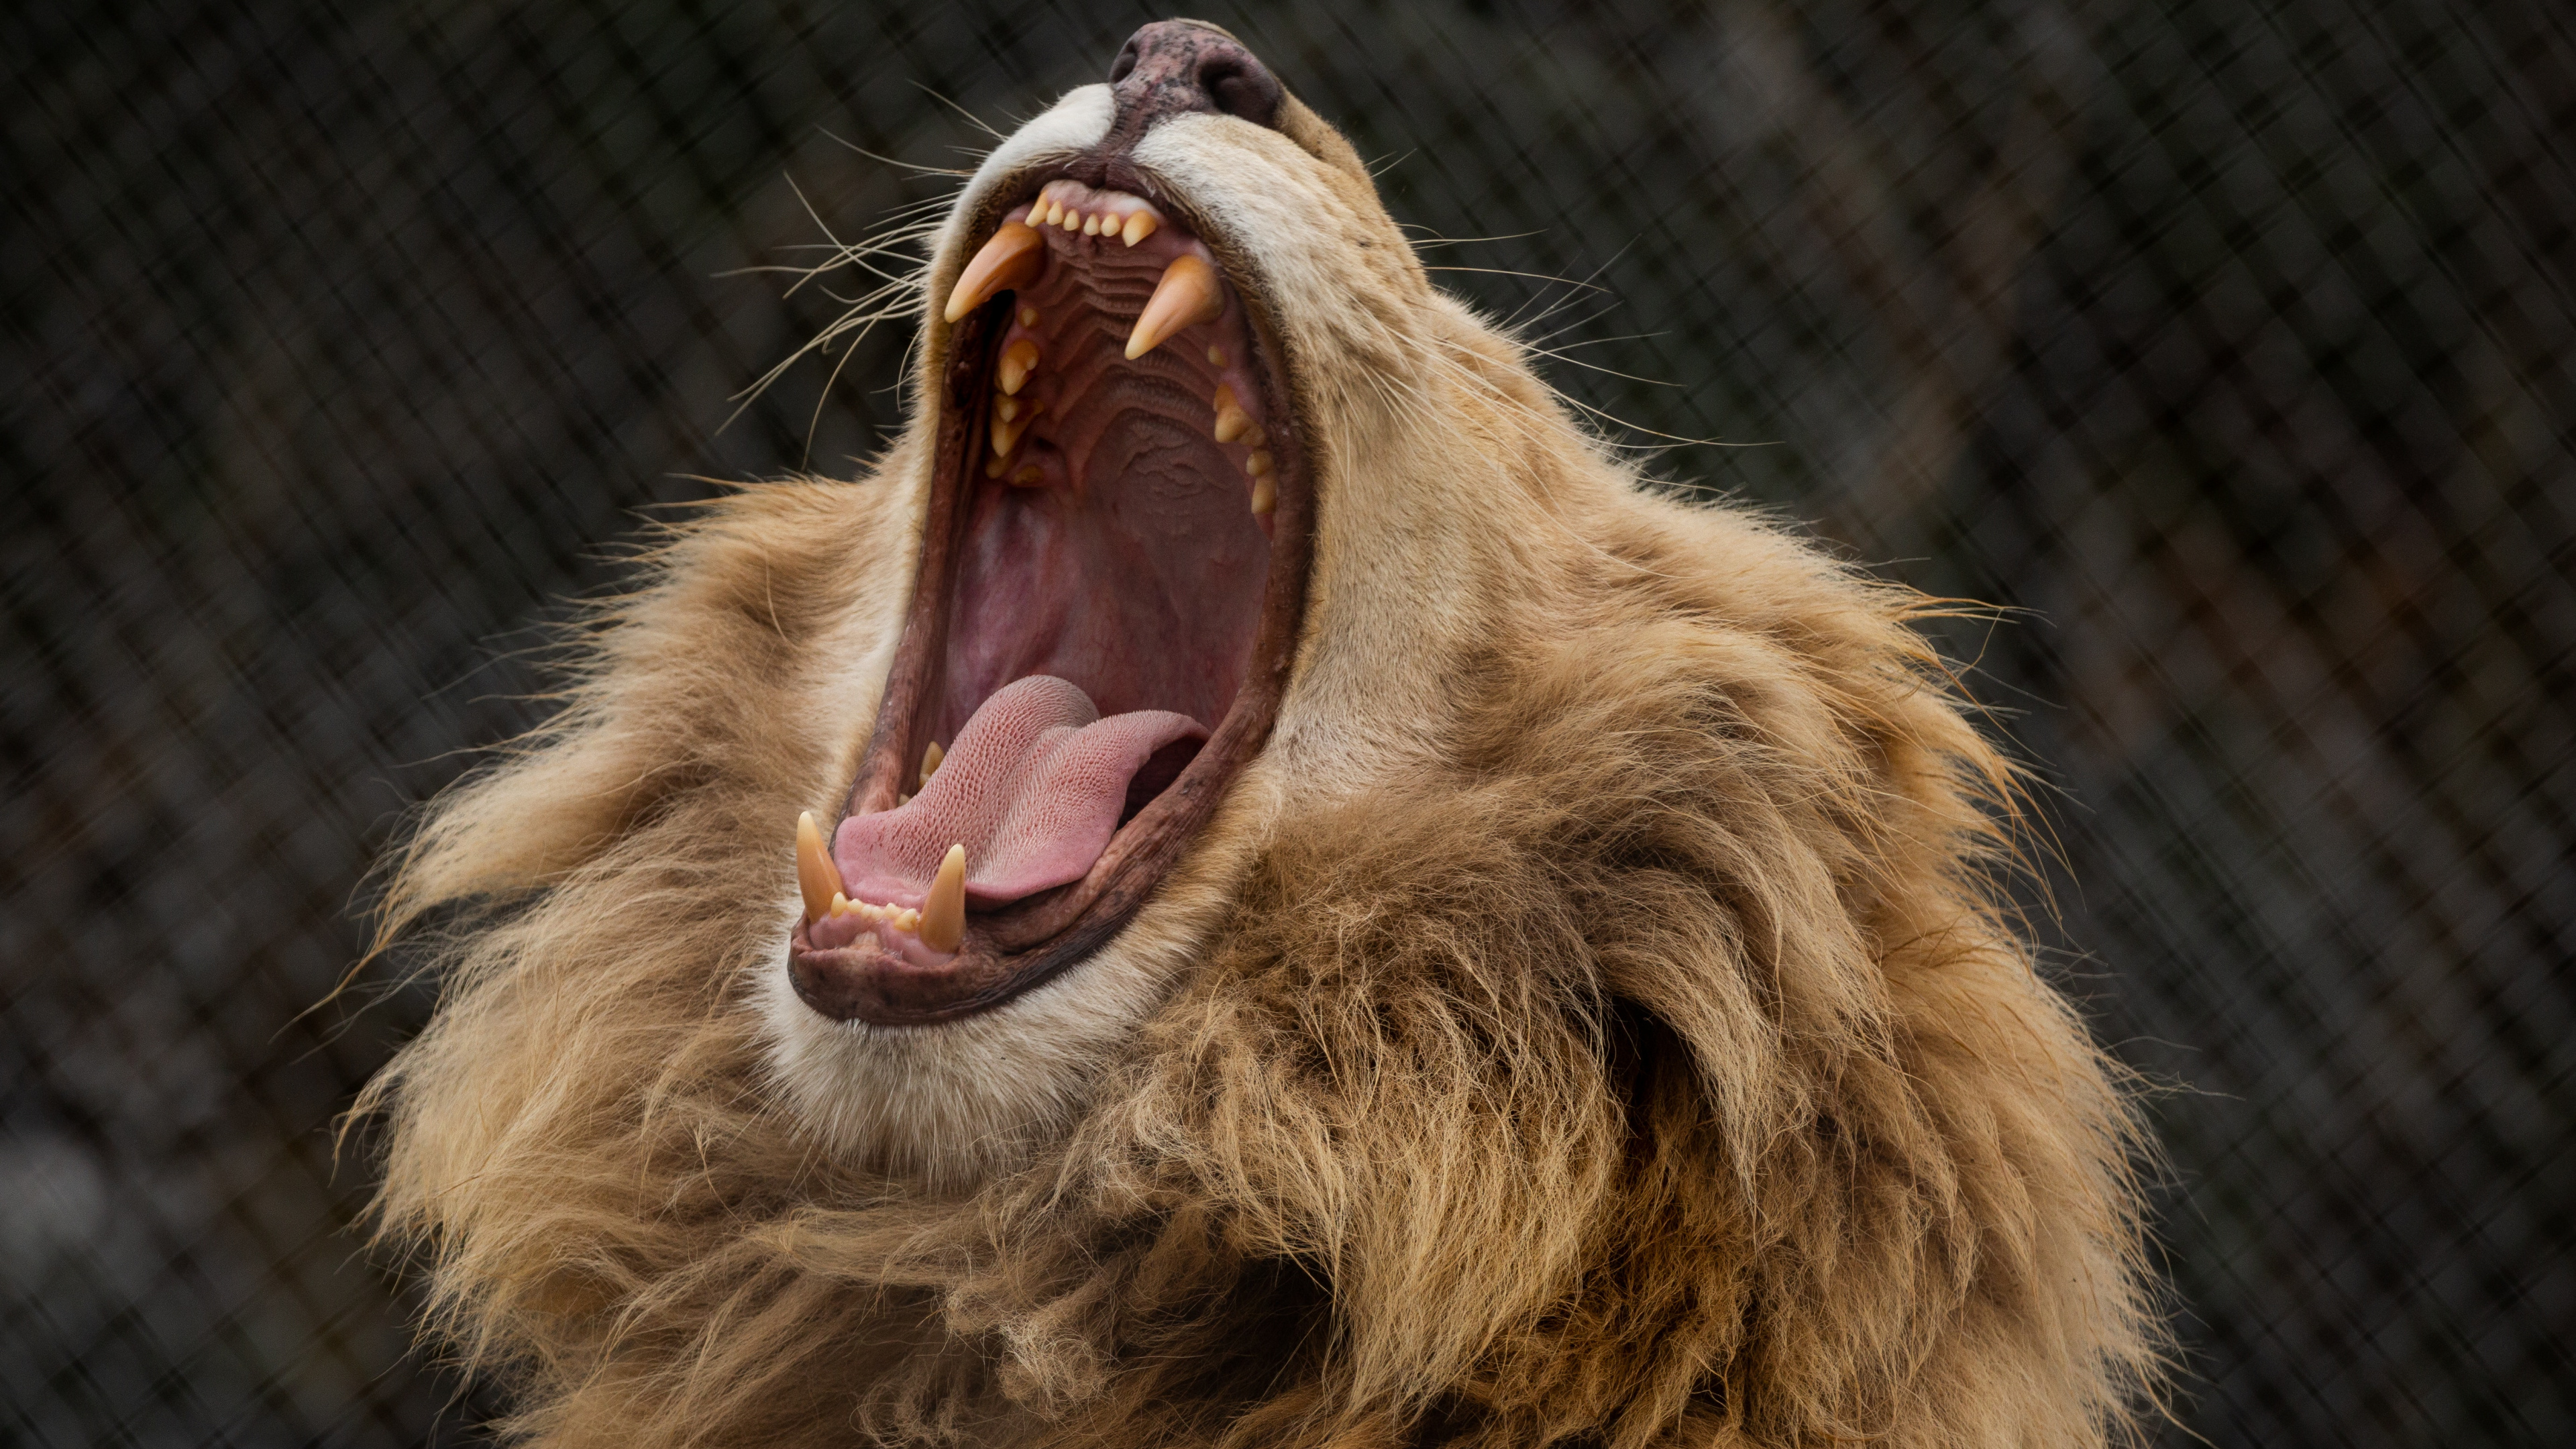 狮子, 猫科, 面部表情, 打个哈欠, 野生动物 壁纸 3840x2160 允许